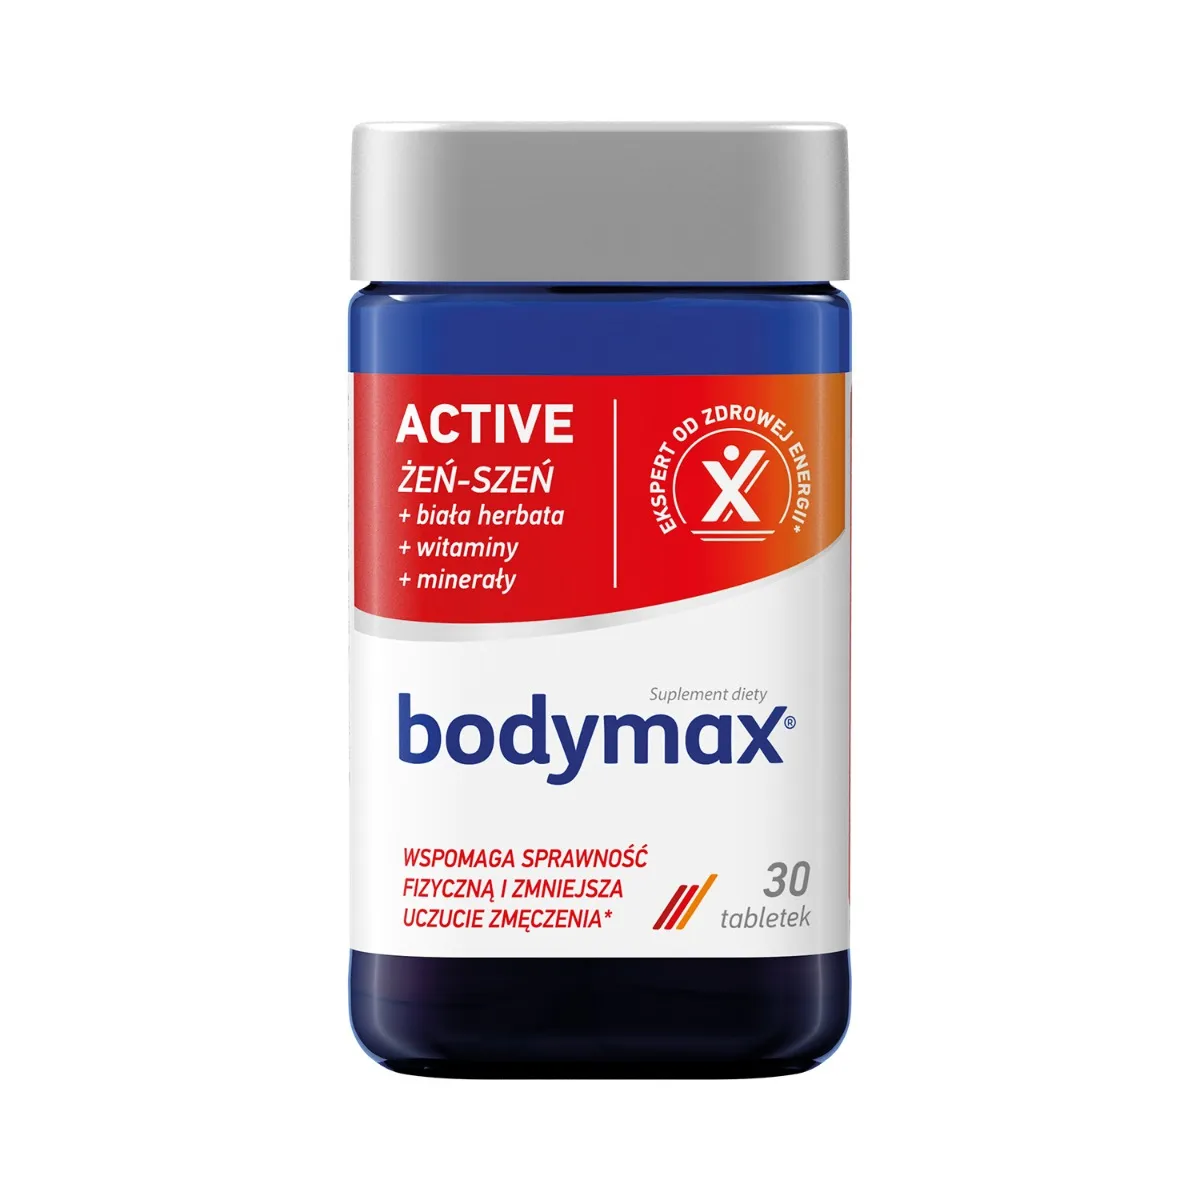 Bodymax Active, suplement diety, 30 tabletek